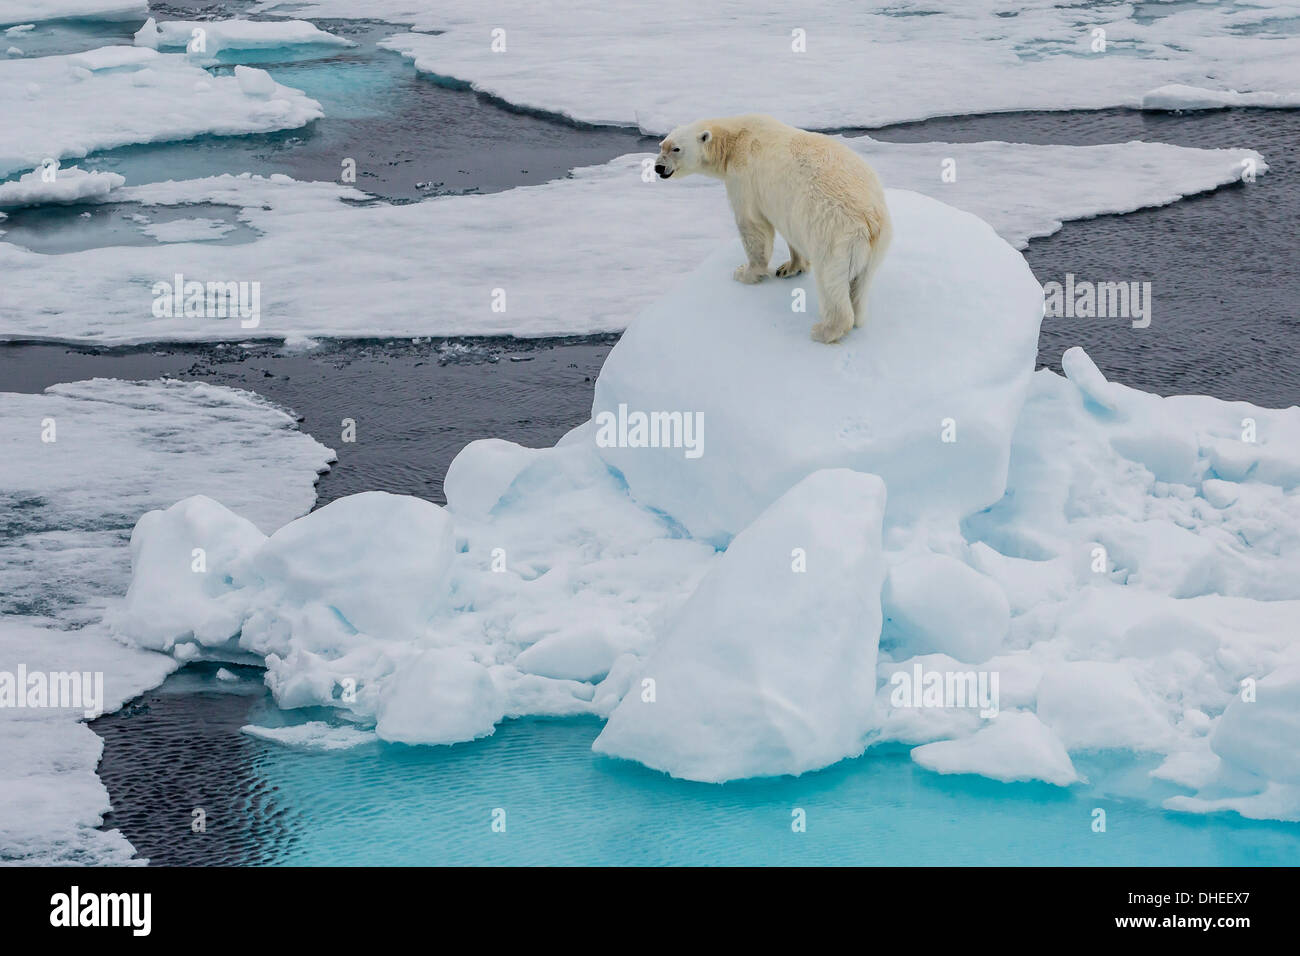 Les jeunes adultes l'ours polaire (Ursus maritimus) sur la glace dans le détroit d'Hinlopen, Svalbard, Norvège, Scandinavie, Europe Banque D'Images